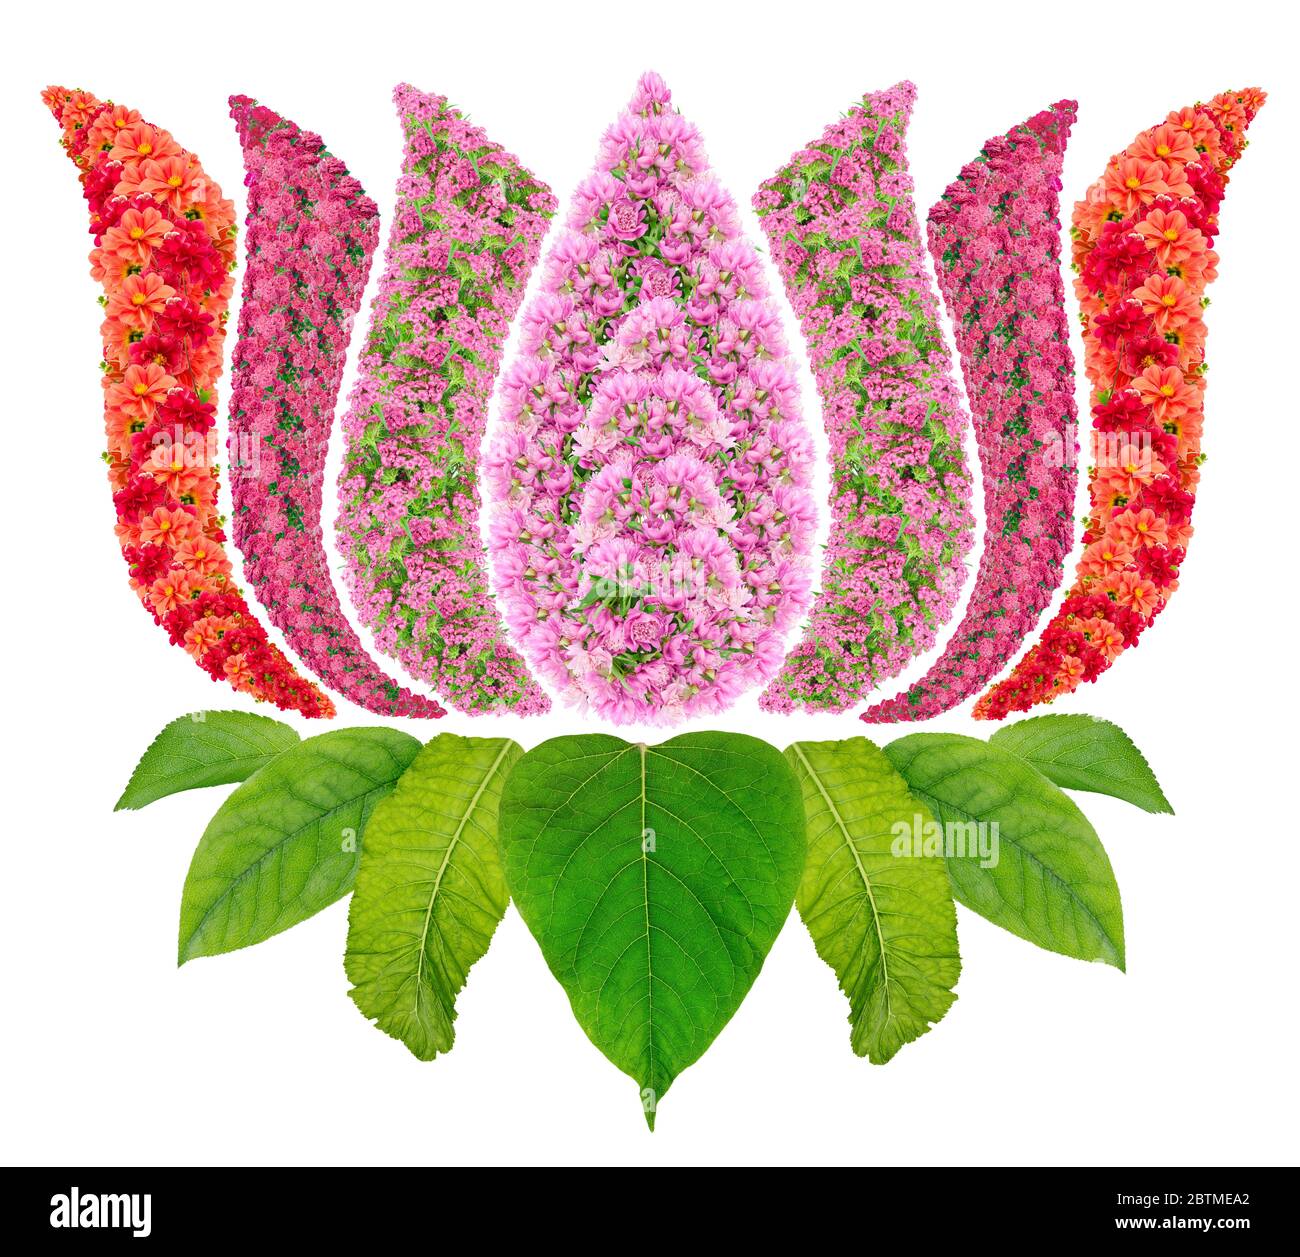 Il loto, Nelumbo nucifera, è una pianta acquatica che svolge un ruolo centrale nell'arte delle religioni indiane come l'Induismo, il Buddismo, il Sikhismo e il Jai Foto Stock